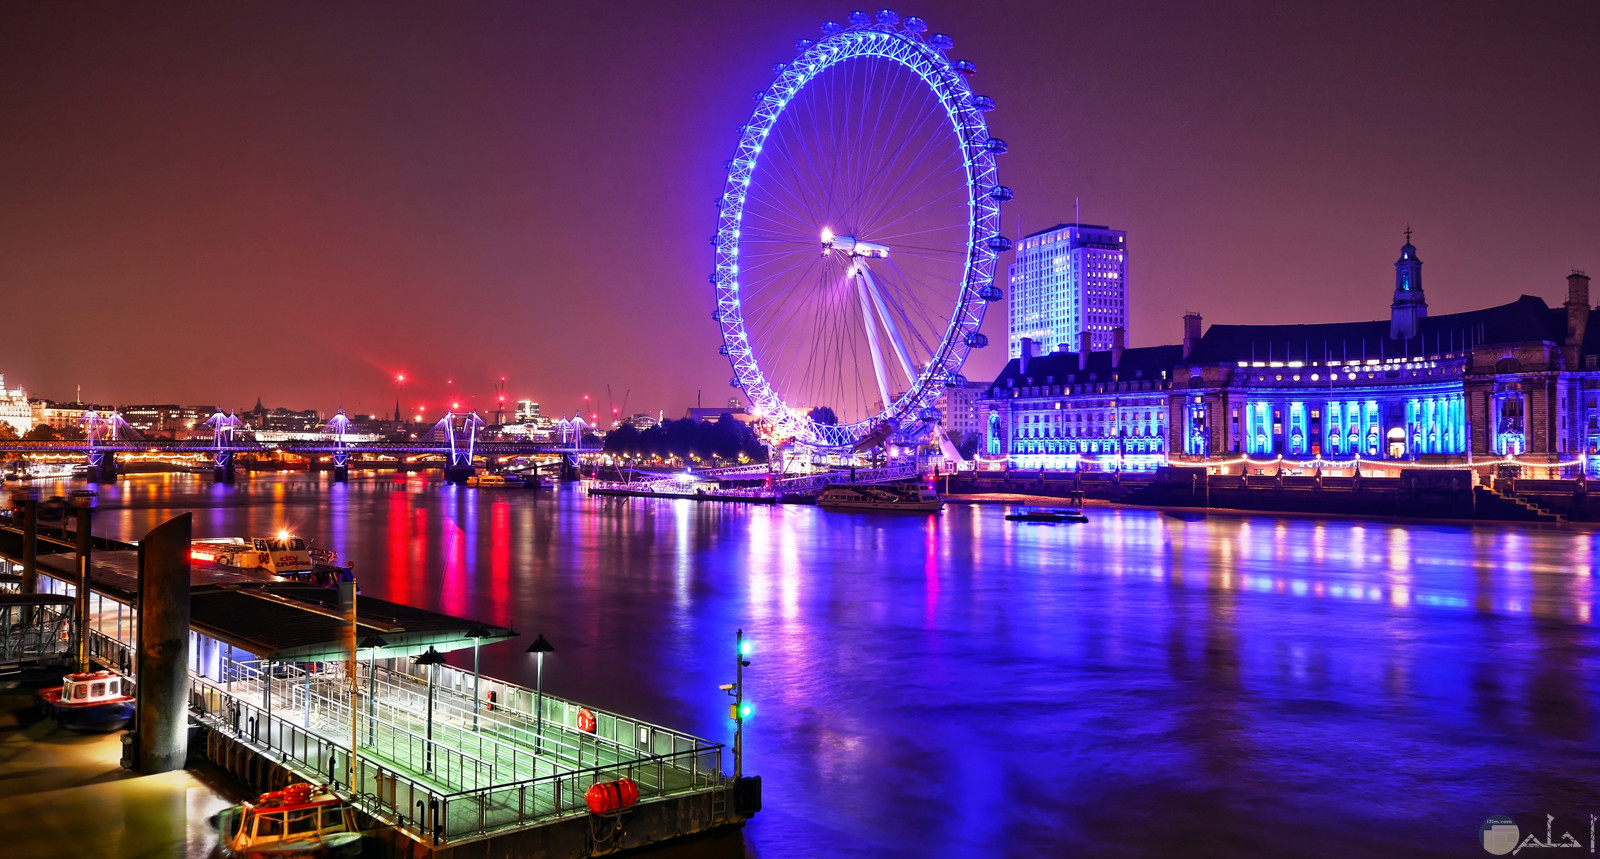 صورة جميلة للعجلة العملاقة عين لندن وهي معلم سياحي مشهور في بريطانيا